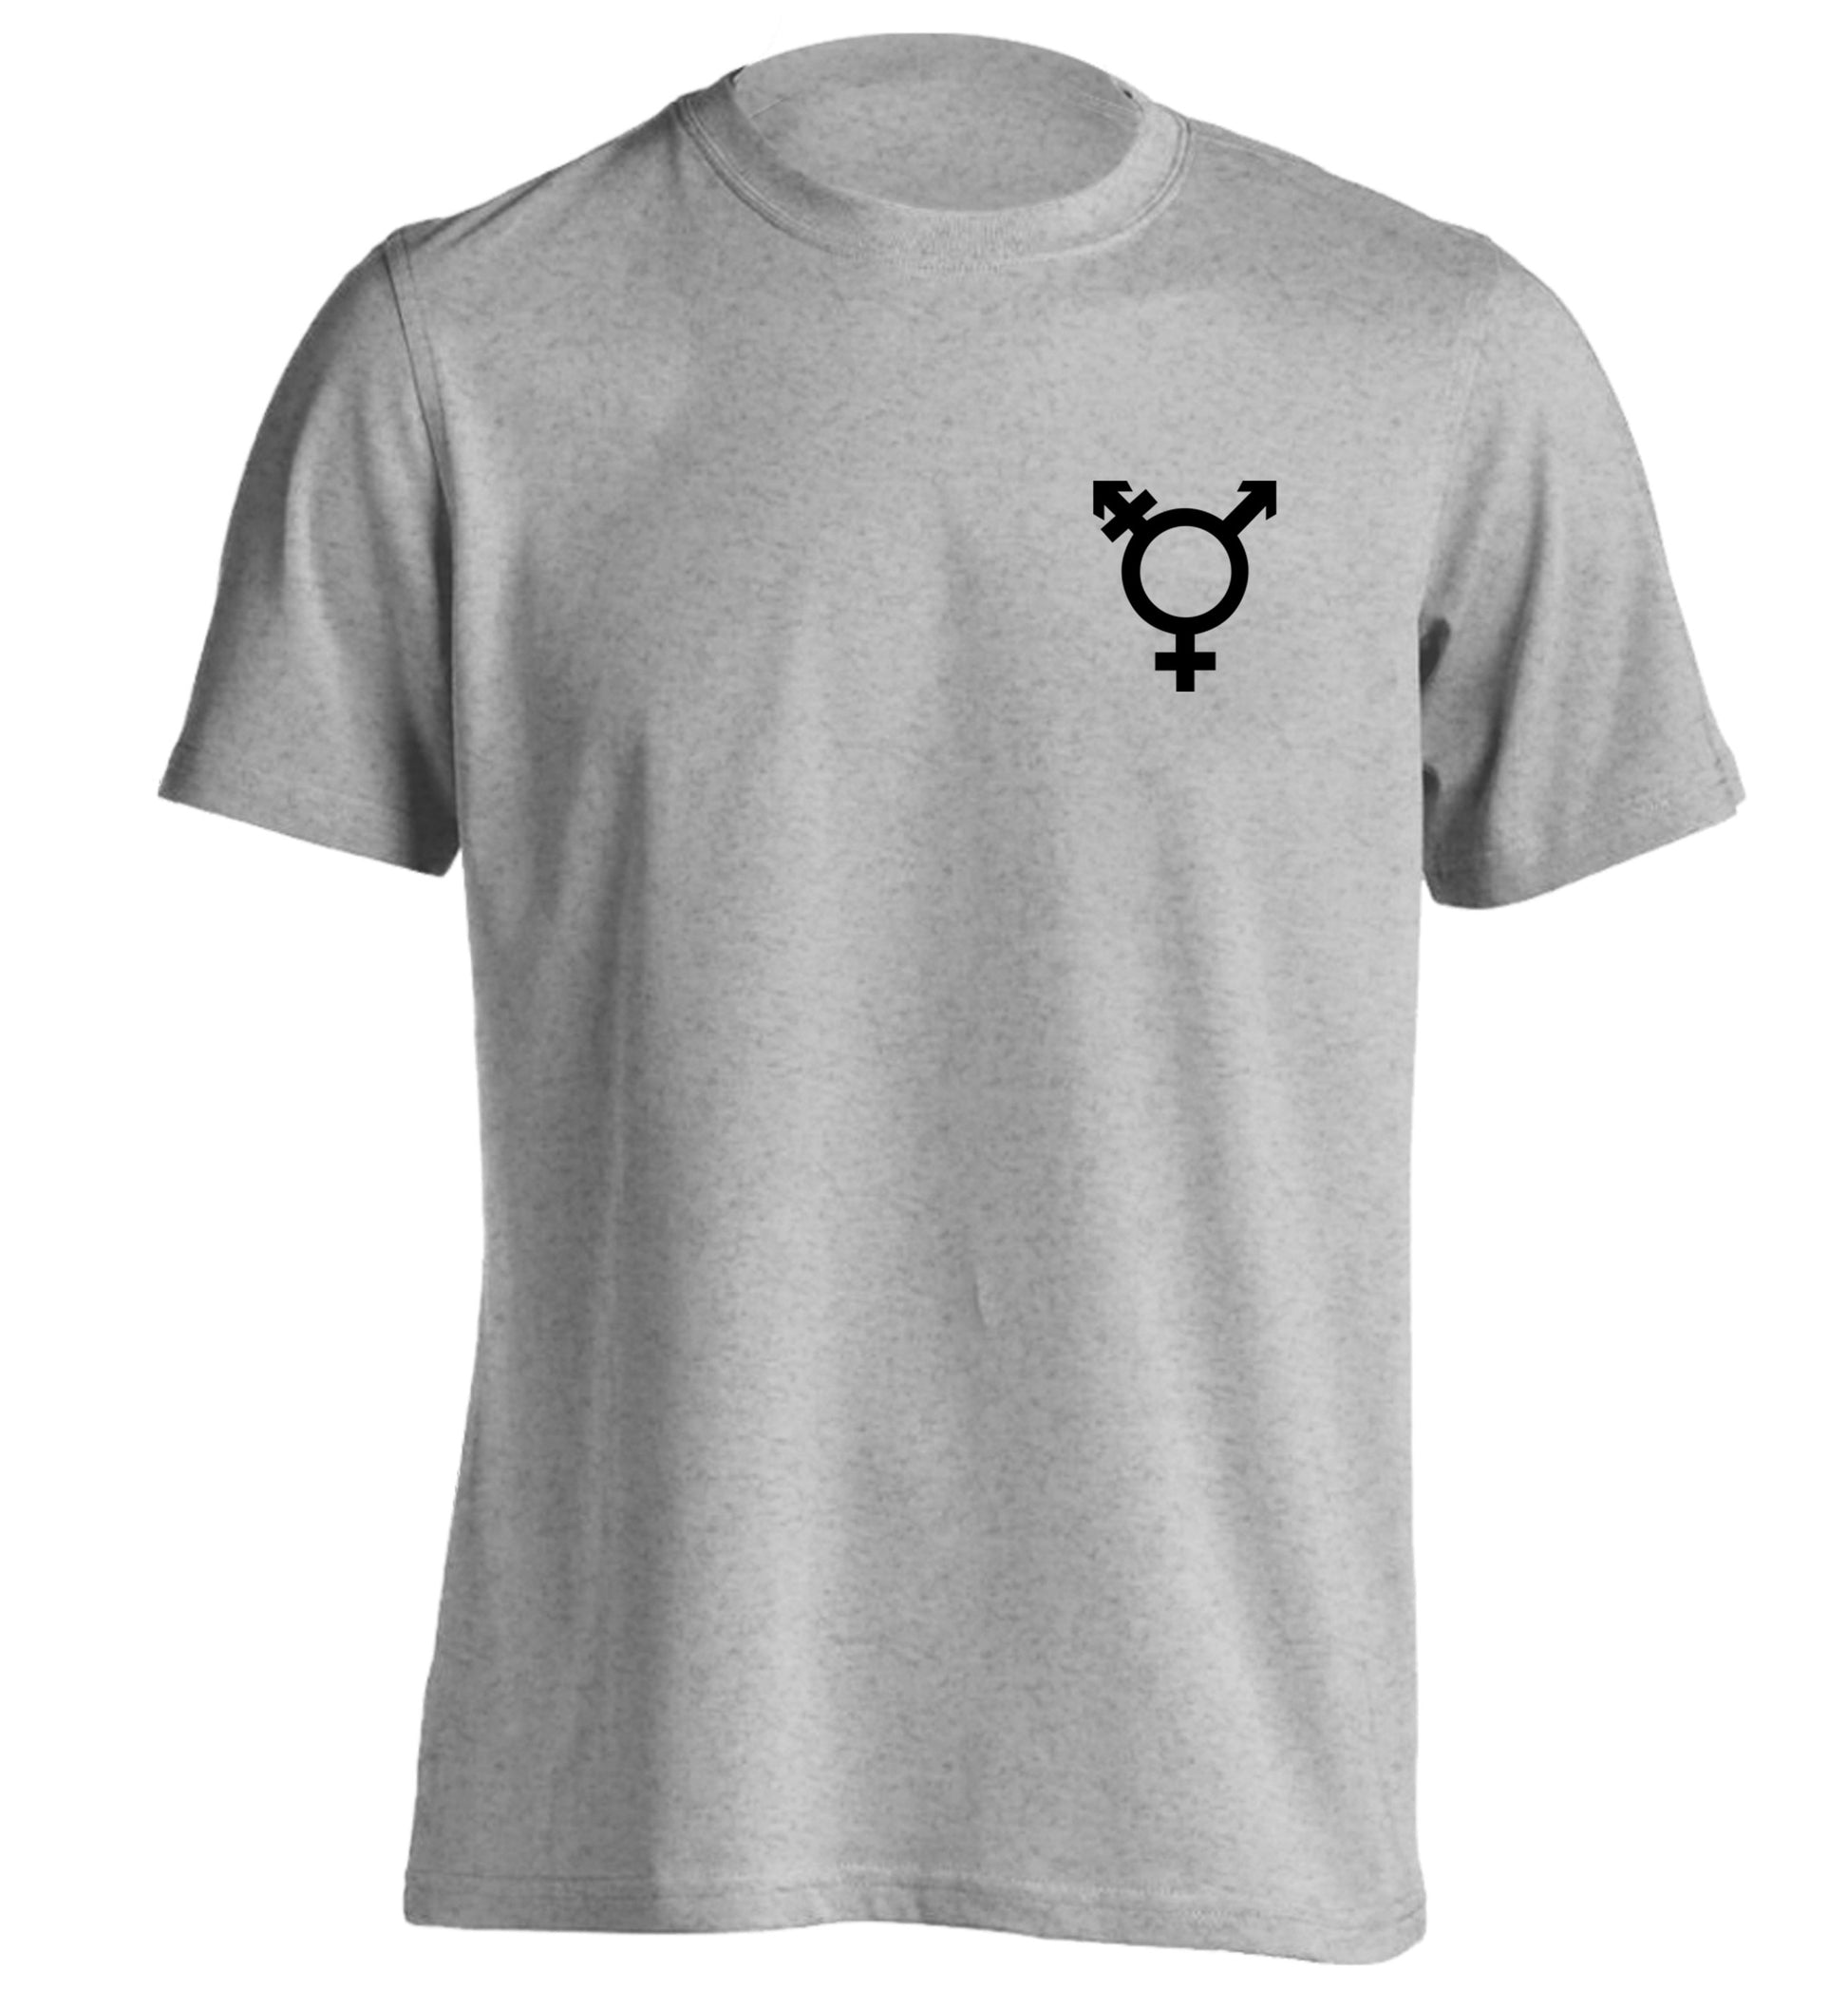 Trans gender symbol pocket adults unisex grey Tshirt 2XL